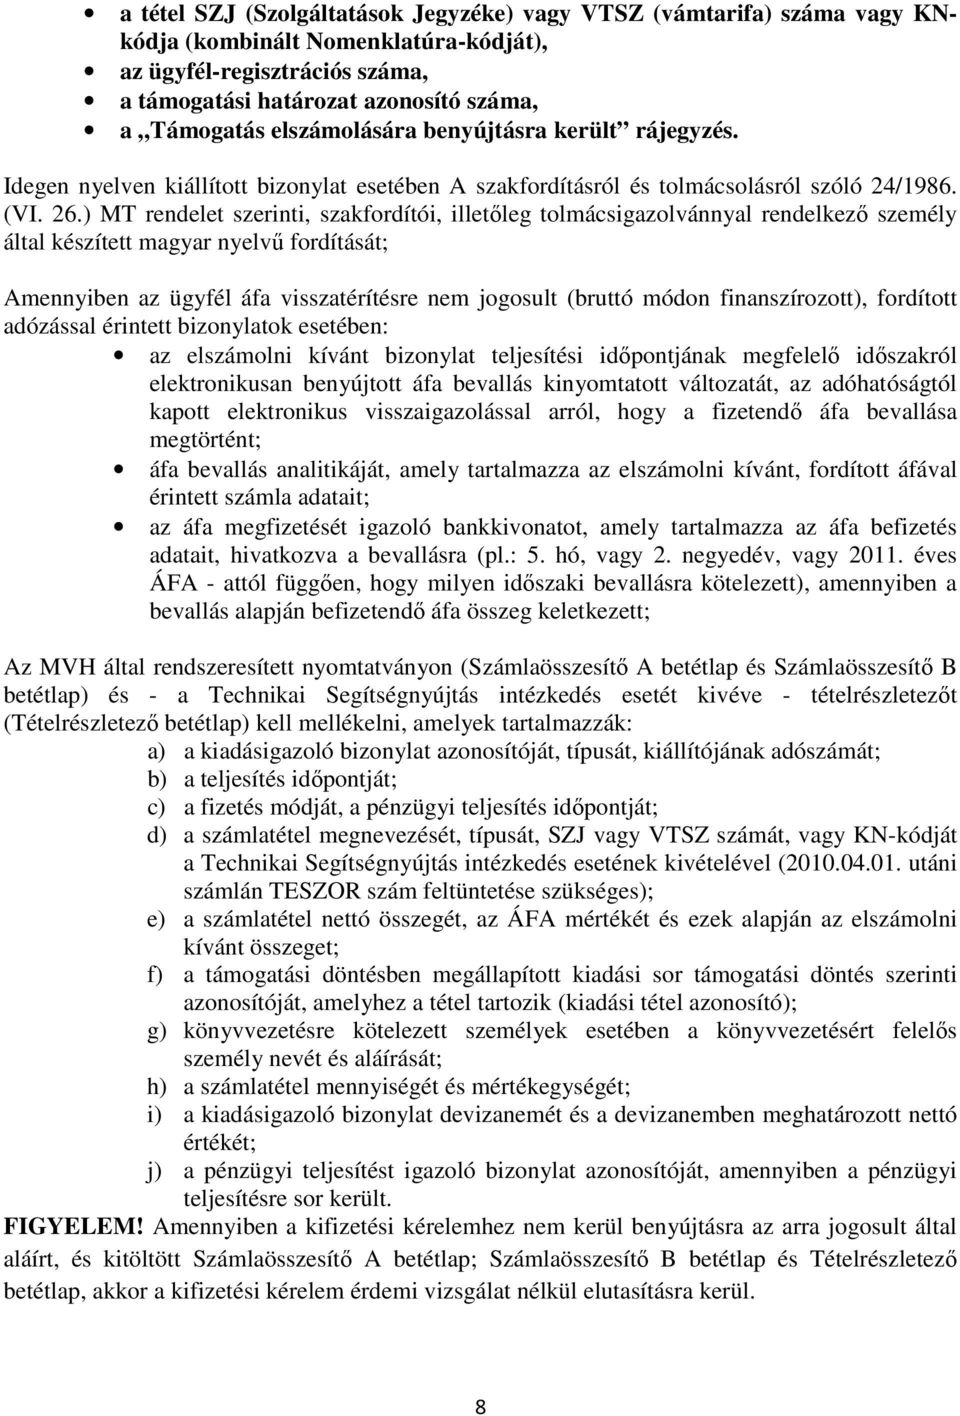 ) MT rendelet szerinti, szakfordítói, illetőleg tolmácsigazolvánnyal rendelkező személy által készített magyar nyelvű fordítását; Amennyiben az ügyfél áfa visszatérítésre nem jogosult (bruttó módon